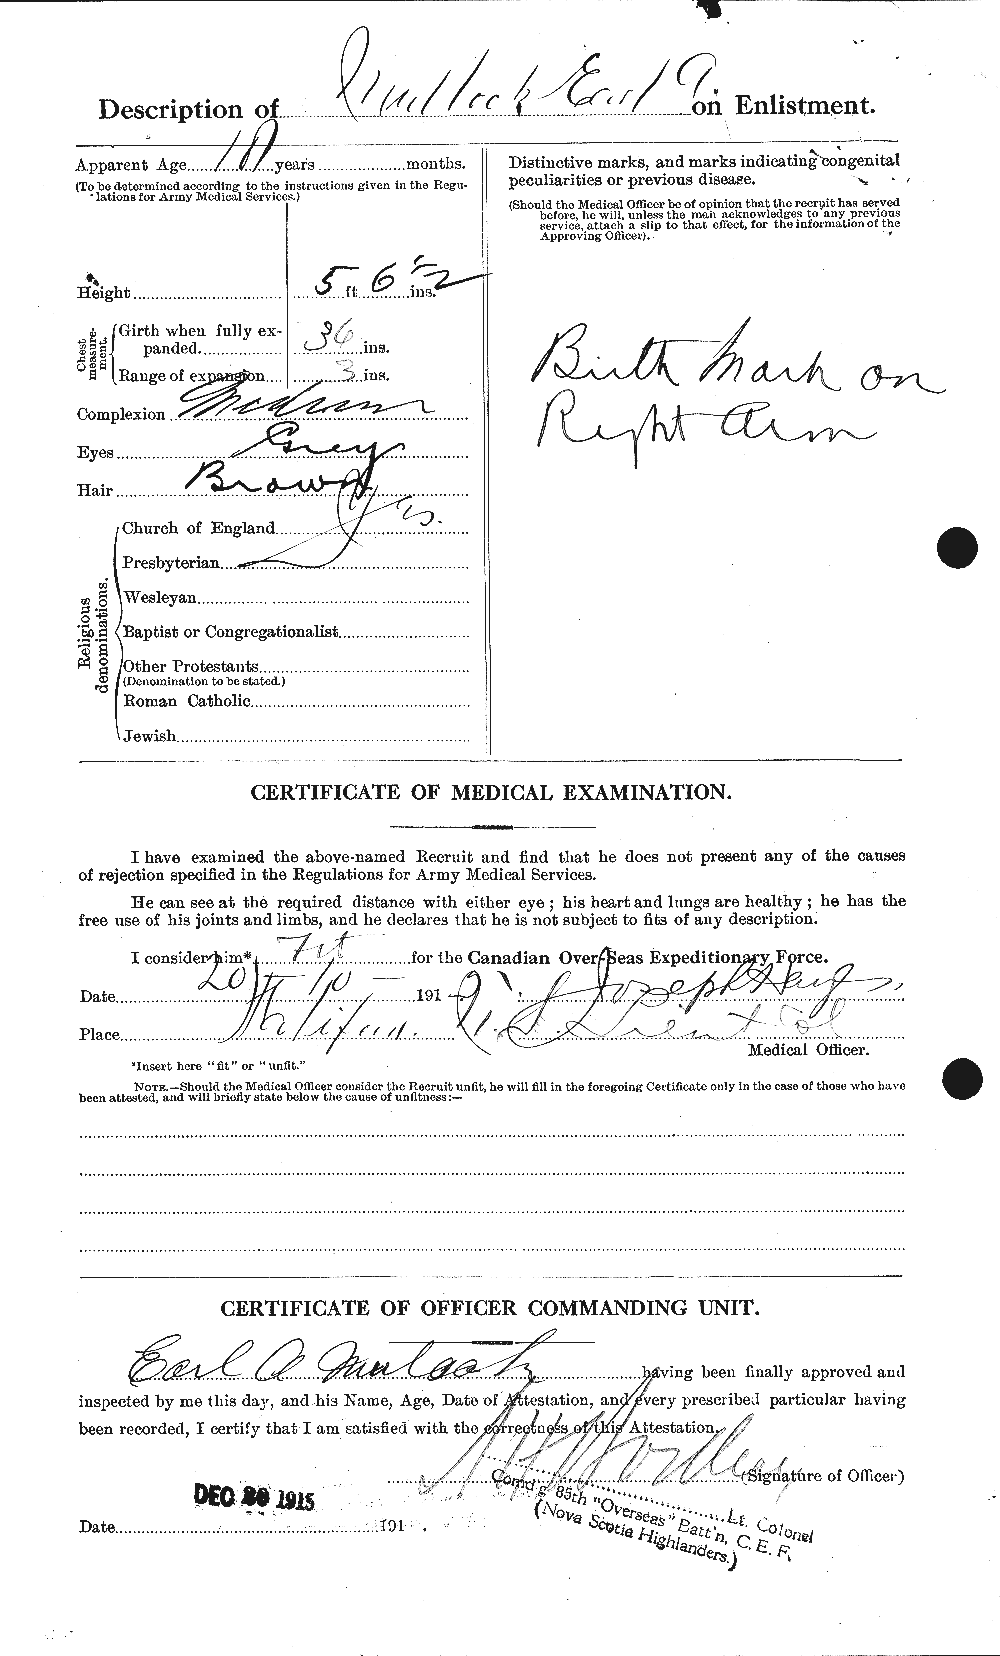 Dossiers du Personnel de la Première Guerre mondiale - CEC 513544b